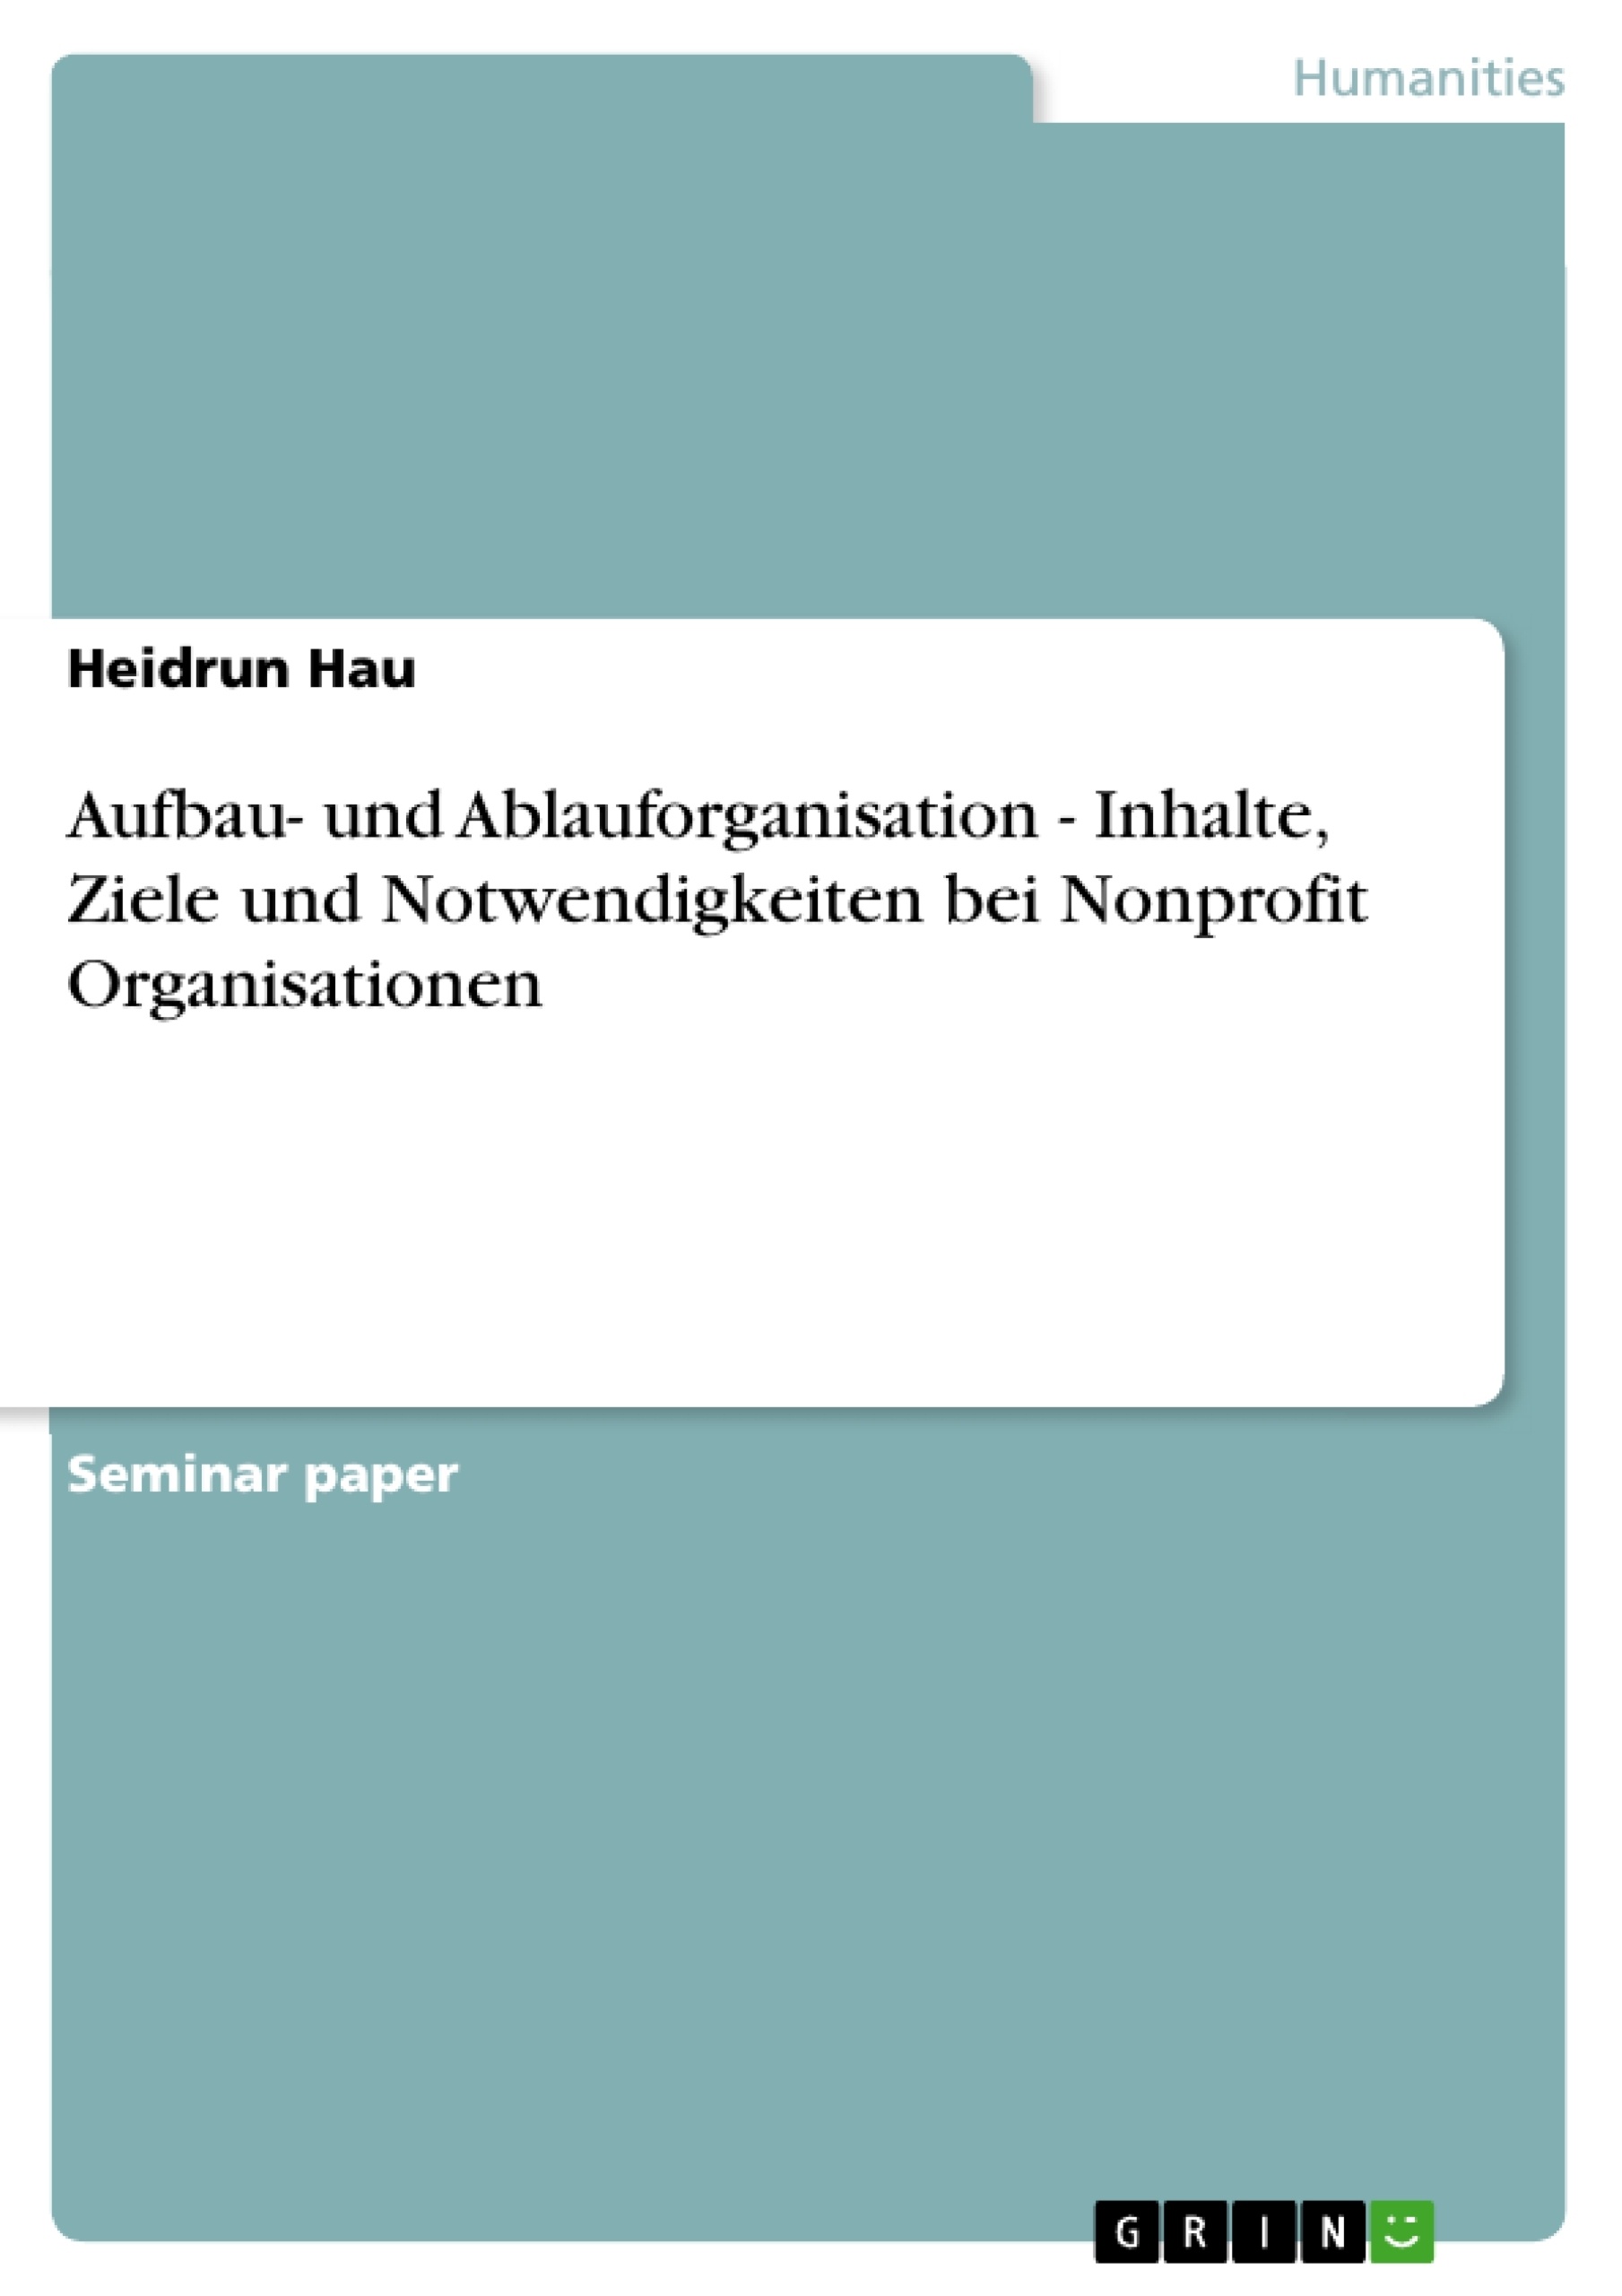 Title: Aufbau- und Ablauforganisation - Inhalte, Ziele und Notwendigkeiten bei Nonprofit Organisationen